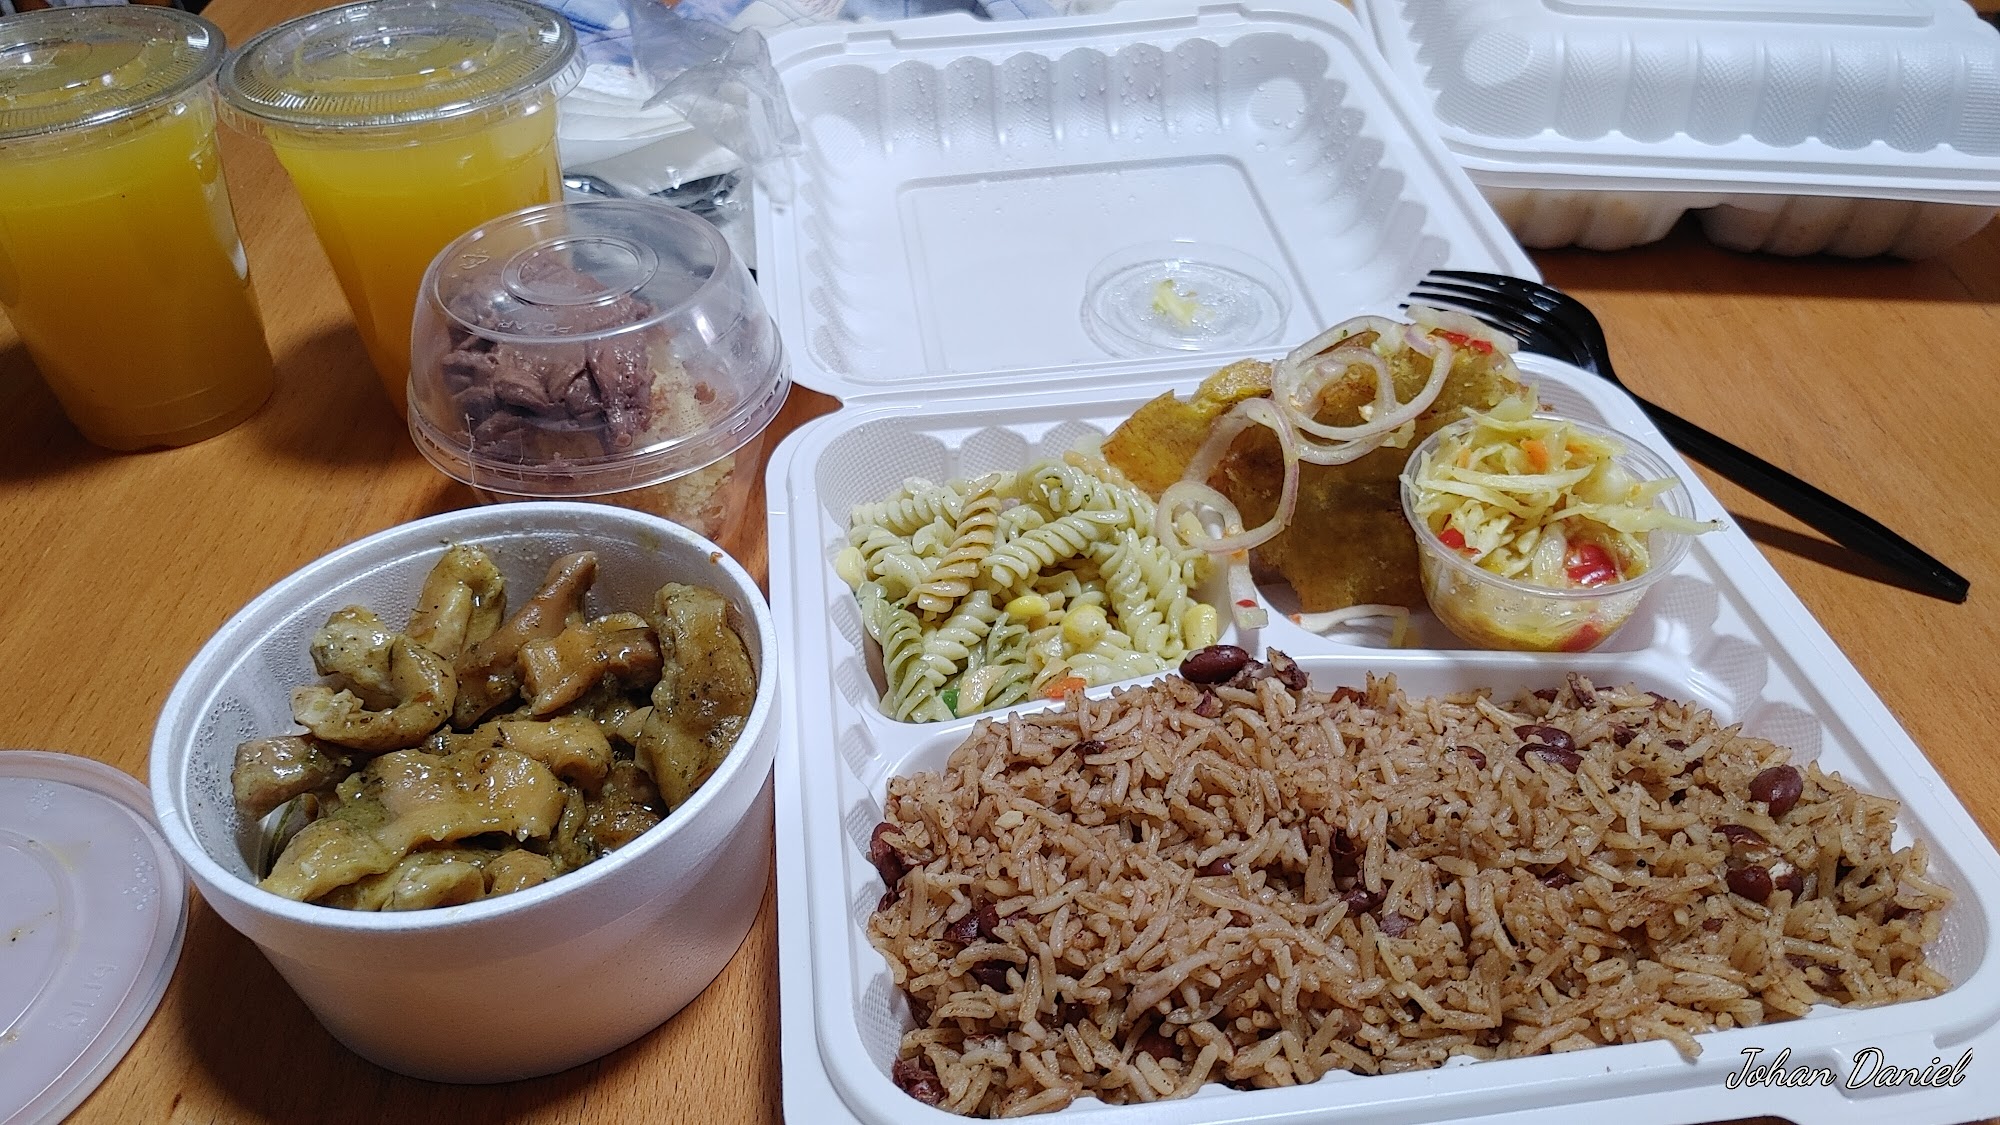 Monique Haitian Food